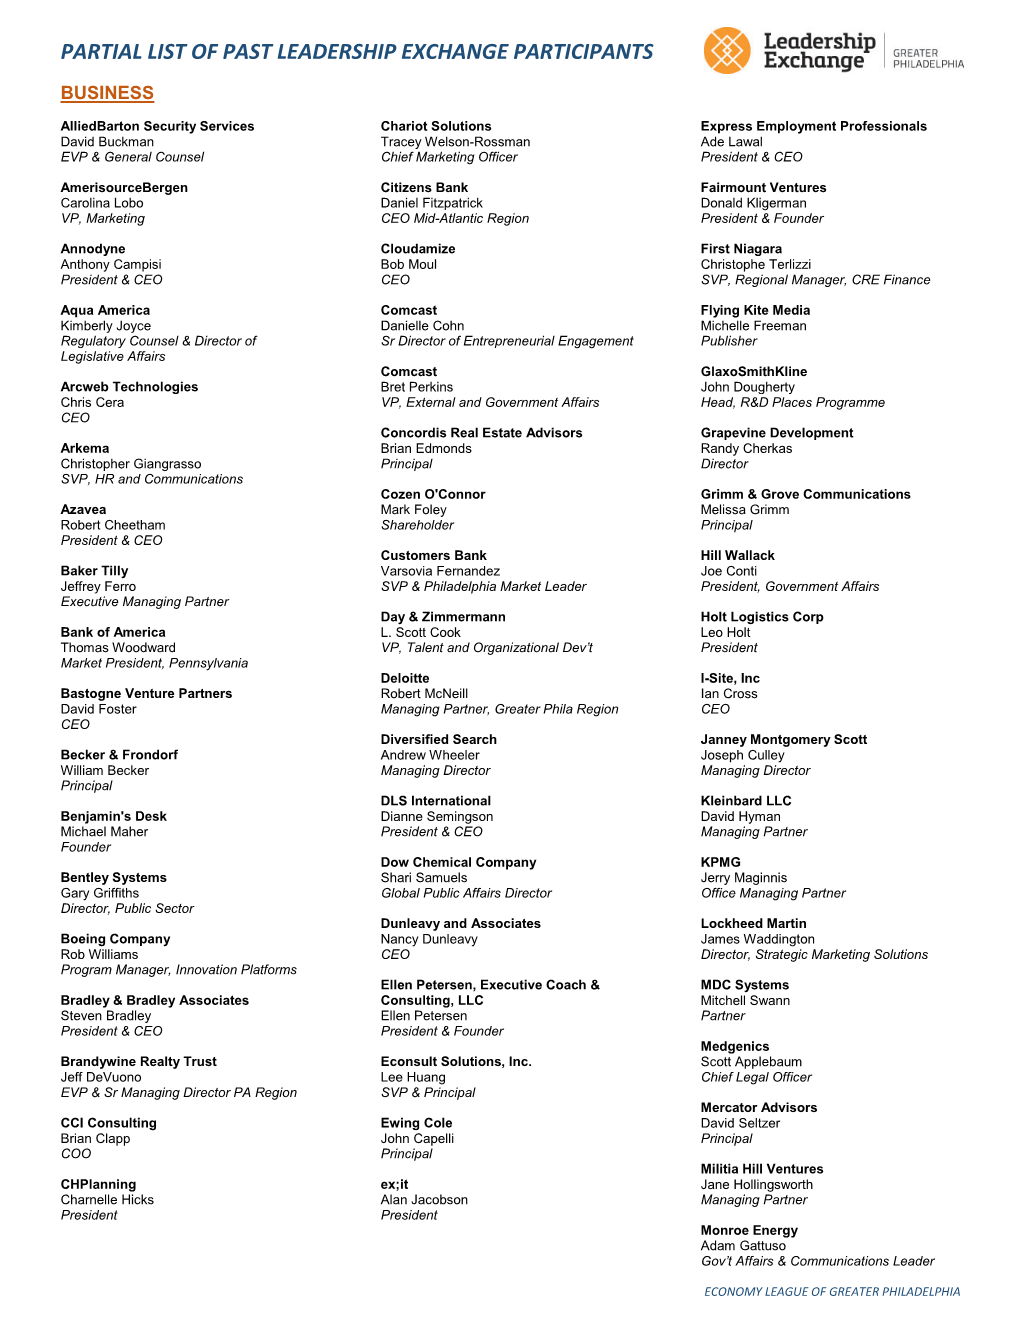 Partial List of Past Leadership Exchange Participants